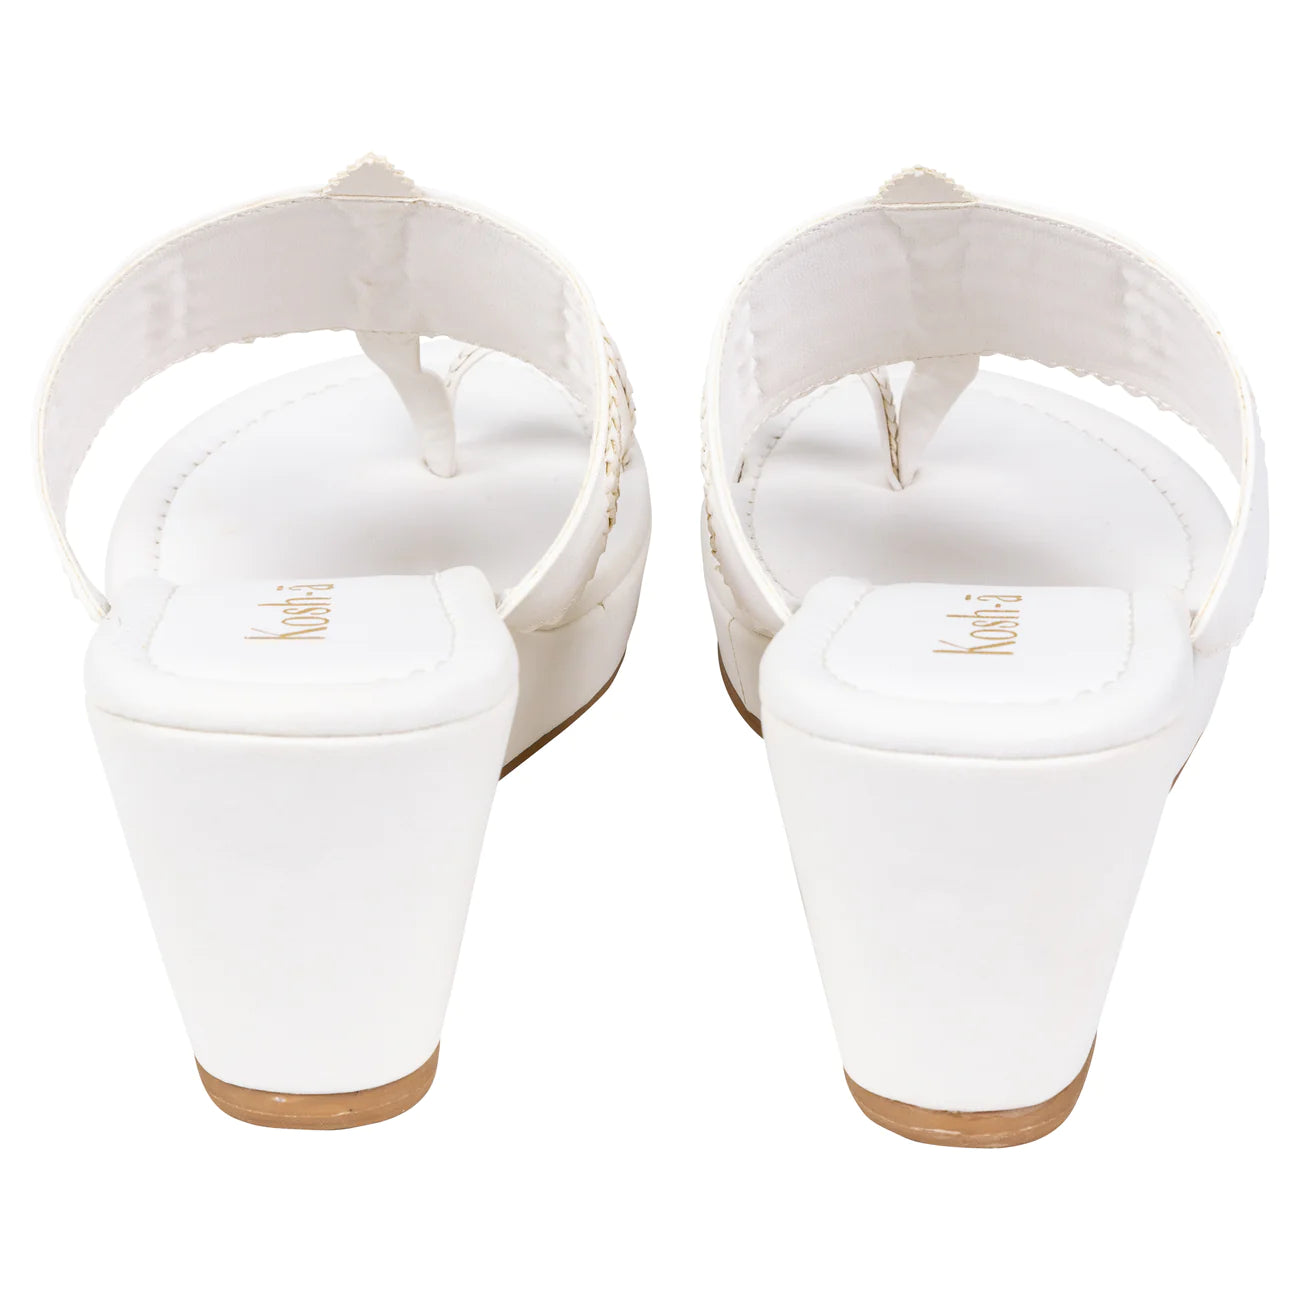 designer white wedge sandal for women